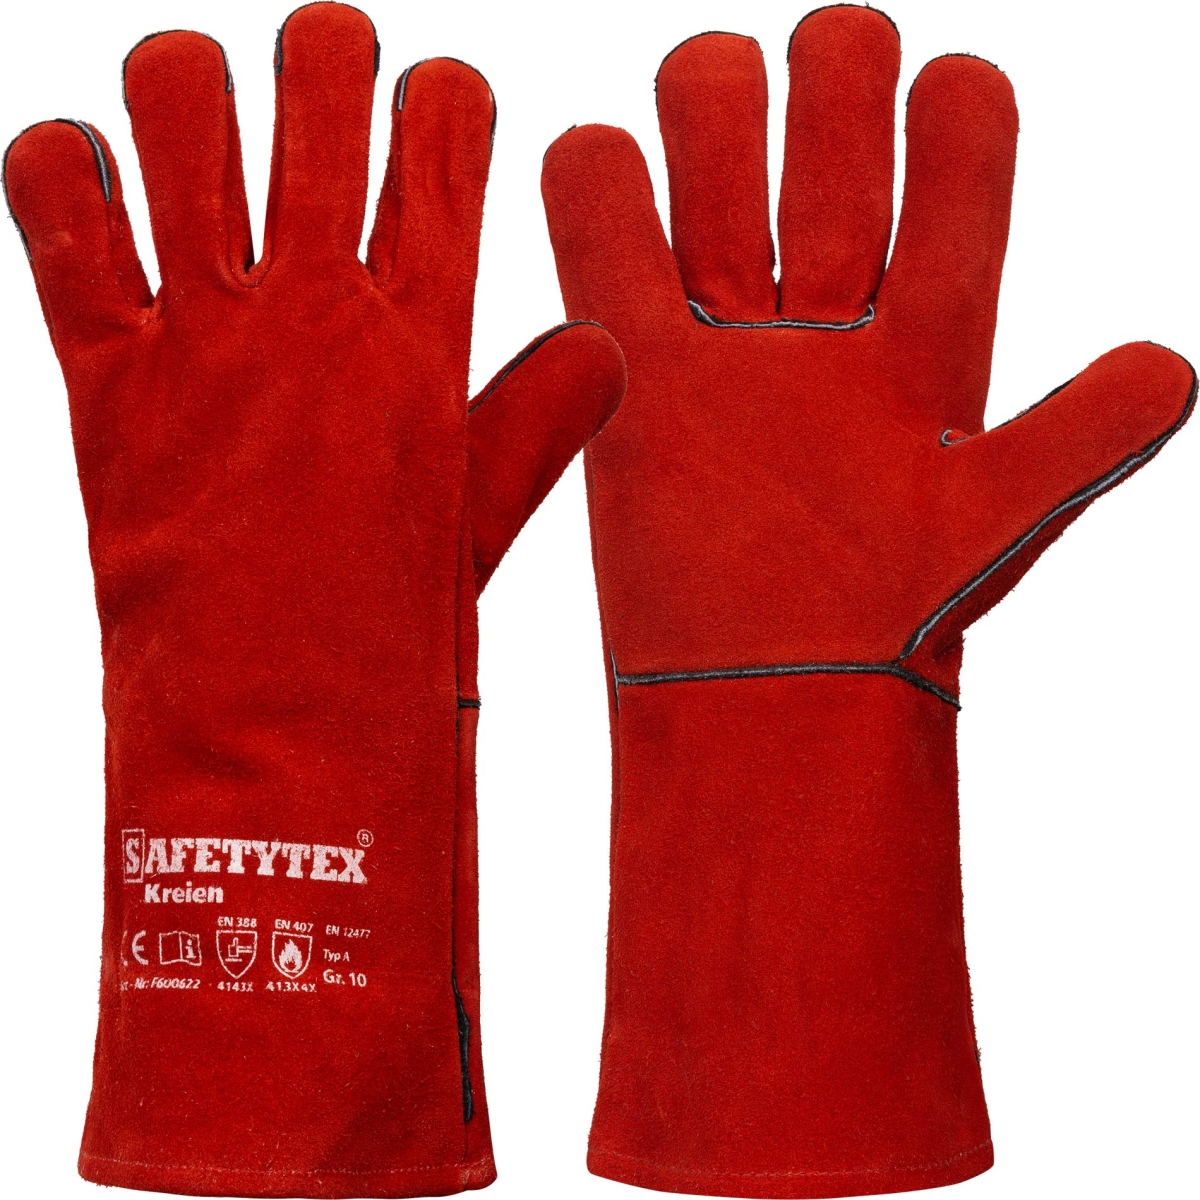 rote schweißer arbeitshandschuhe aus leder mit safetytex aufdruck